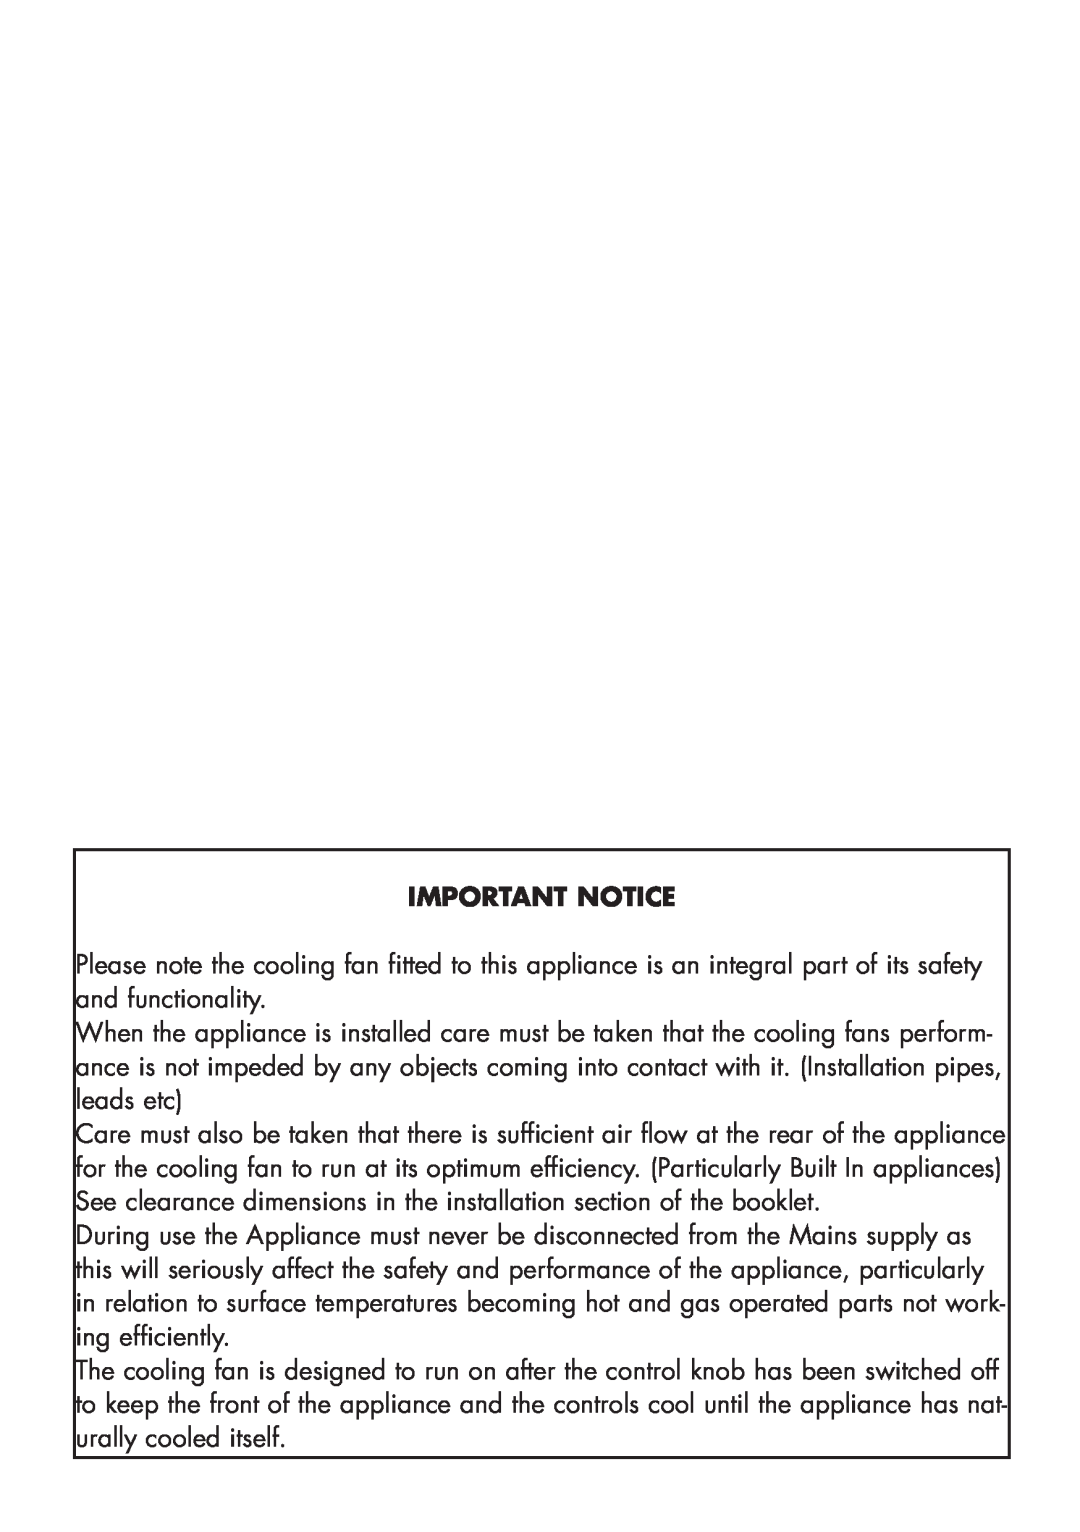 Glen Dimplex Home Appliances Ltd 110 GT, 100 manual Important Notice 